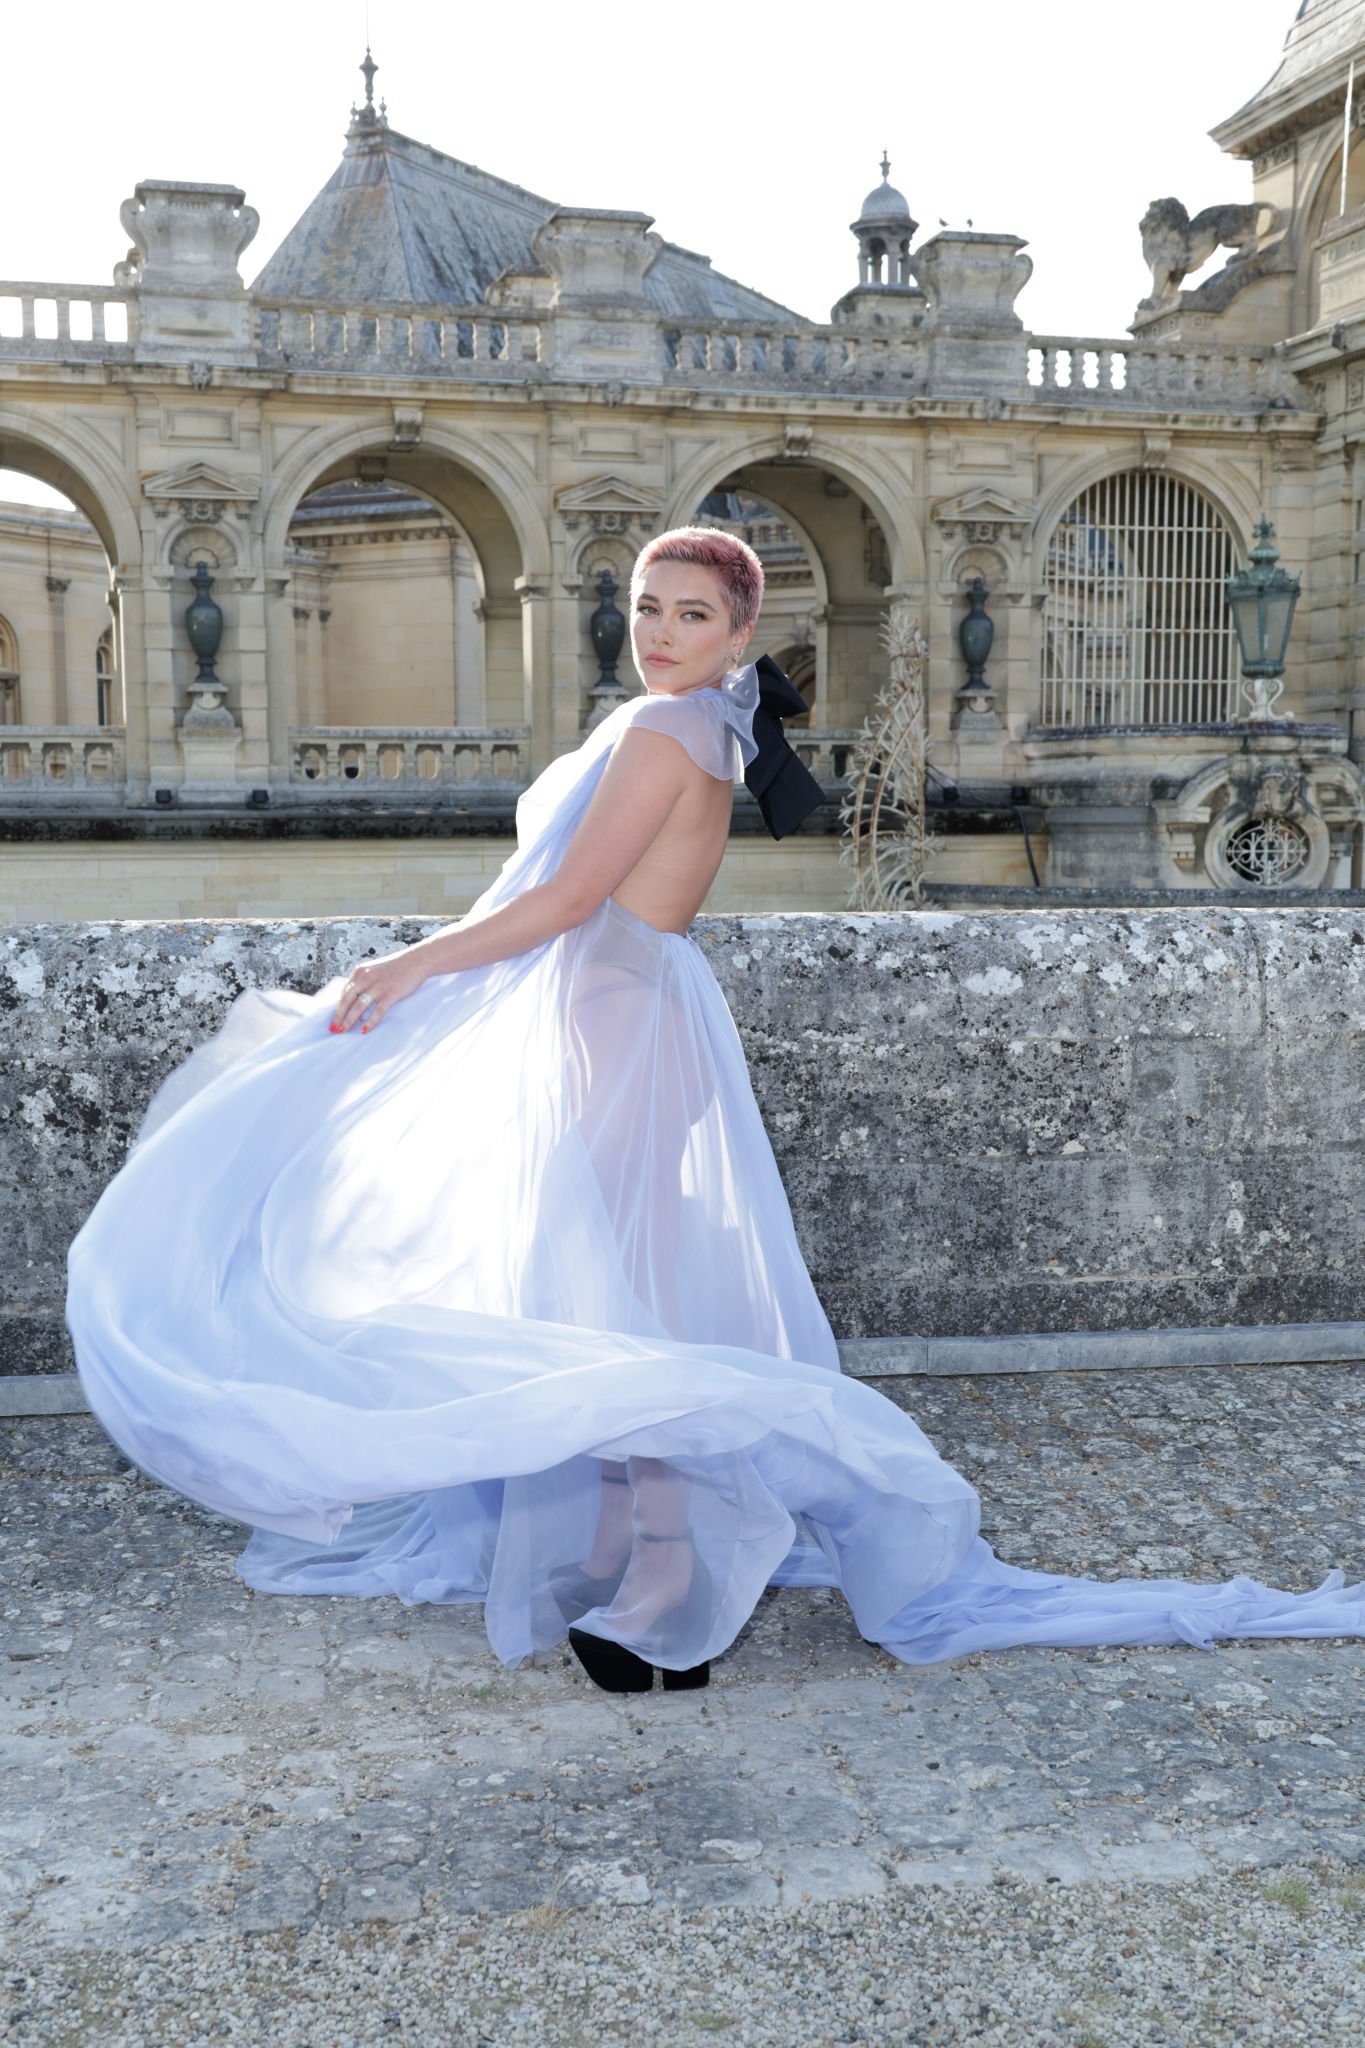 Флоренс Пью вышла в свет в совершенно прозрачном платье на голое тело